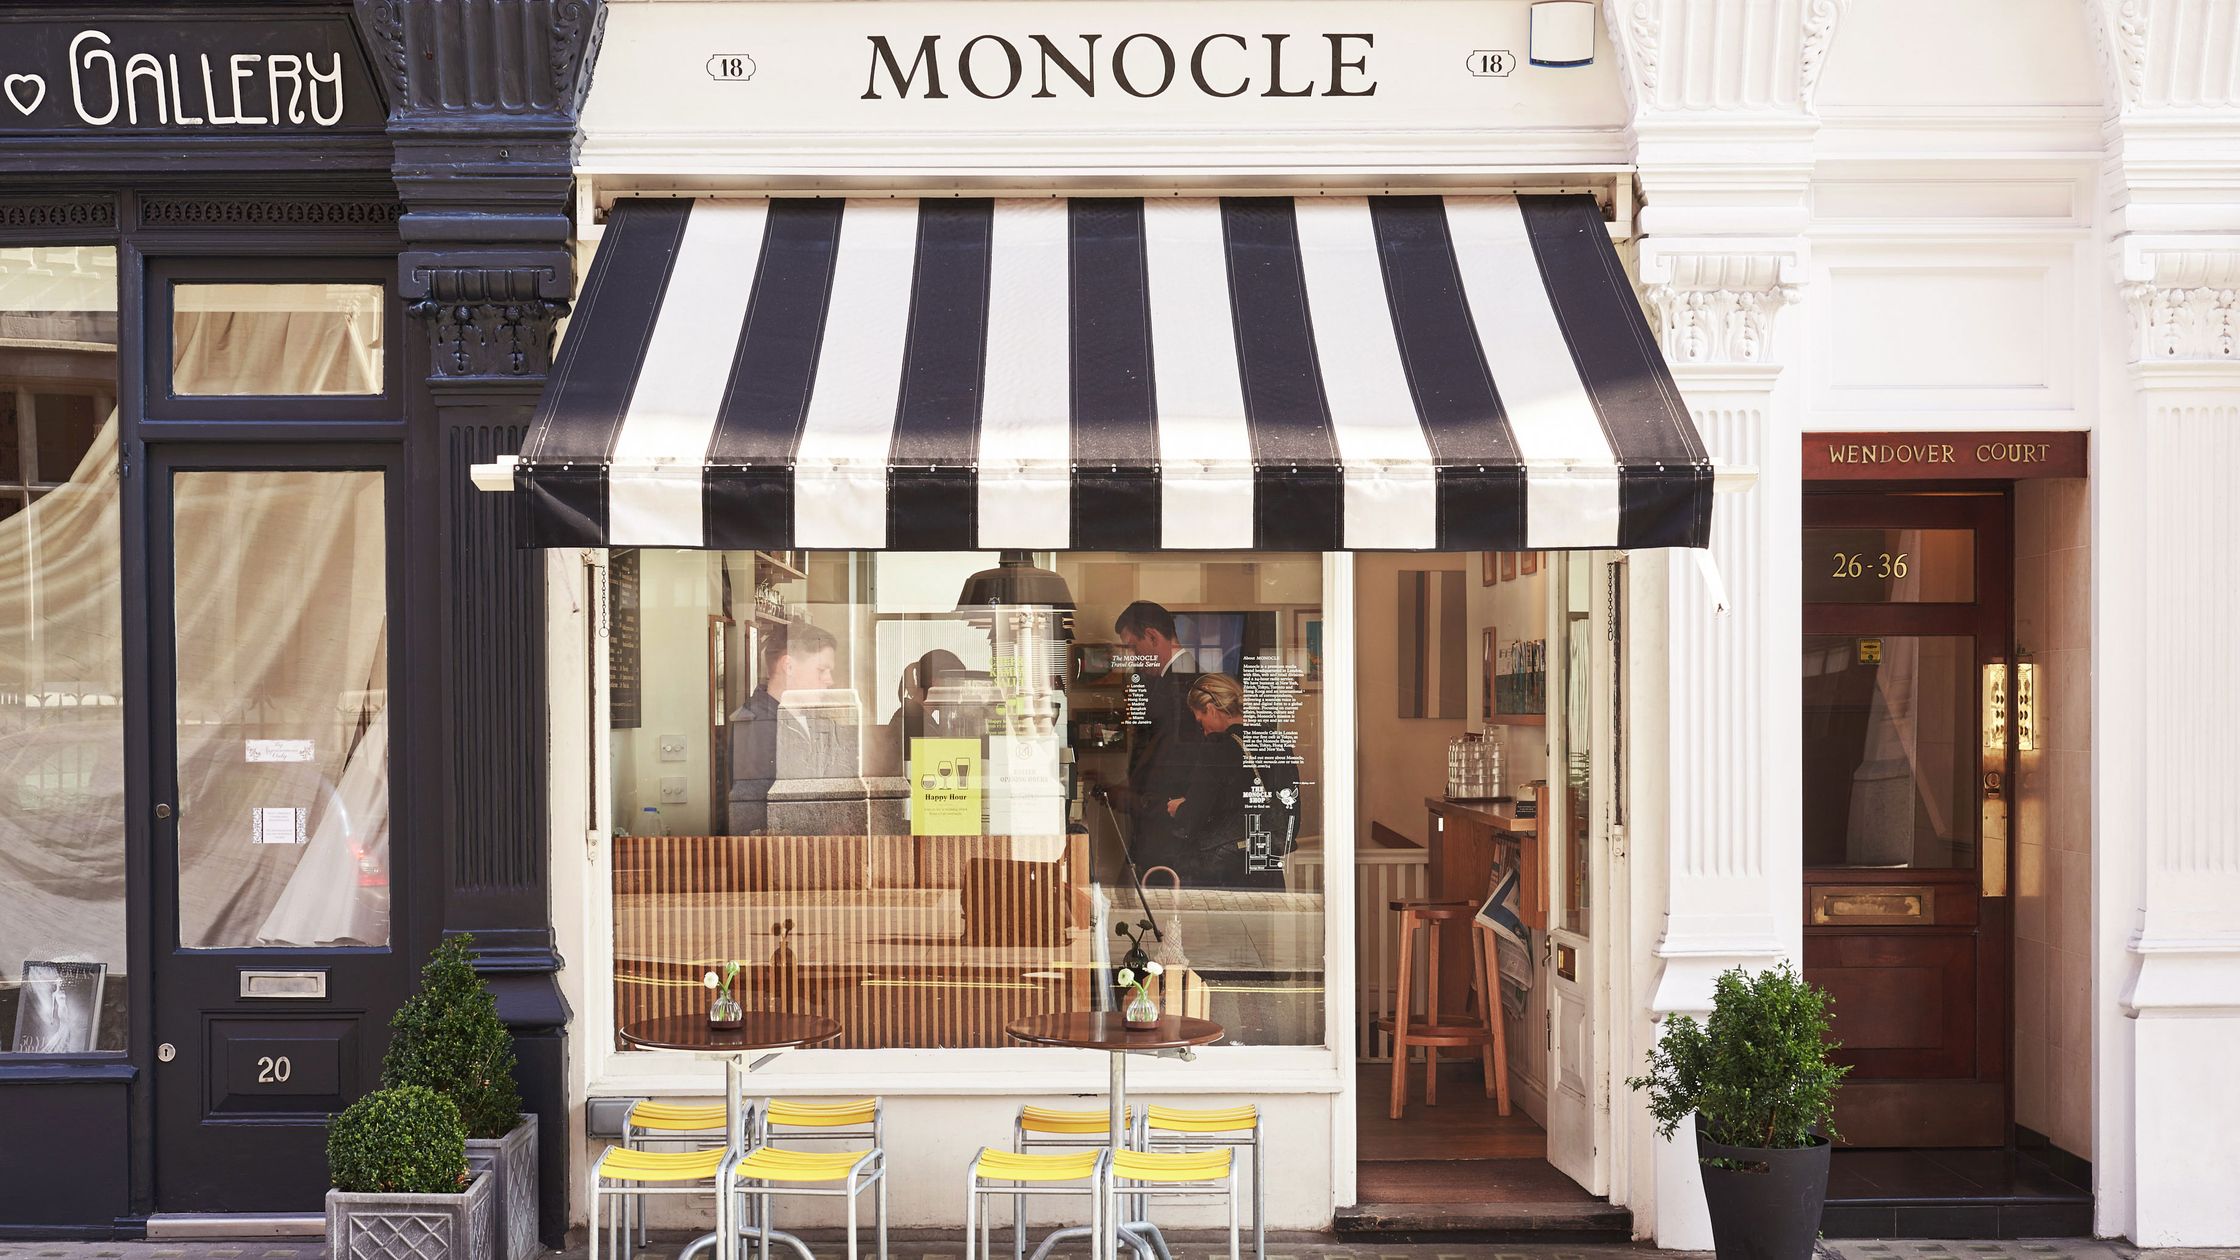 Monocle Café, London